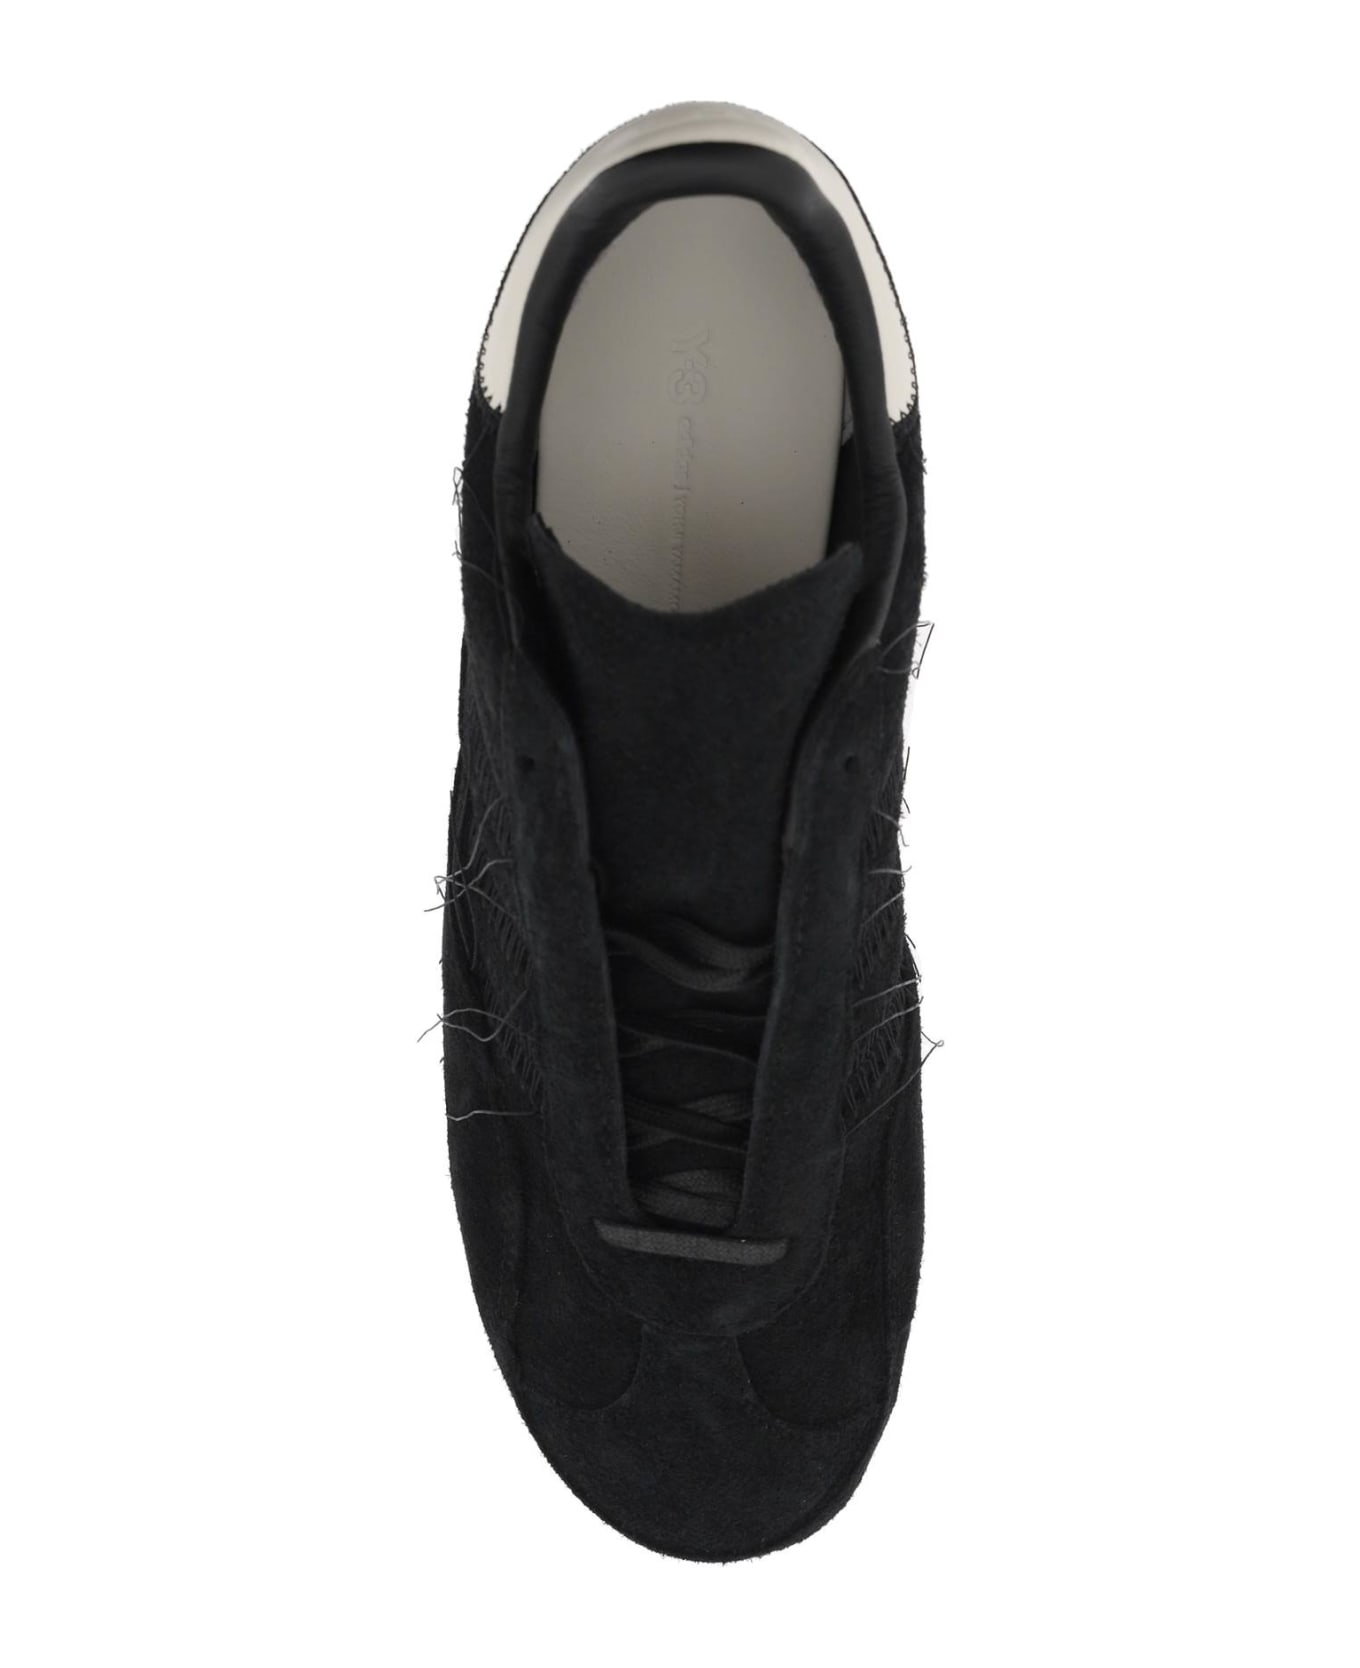 Y-3 Gazelle Sneakers - Black スニーカー